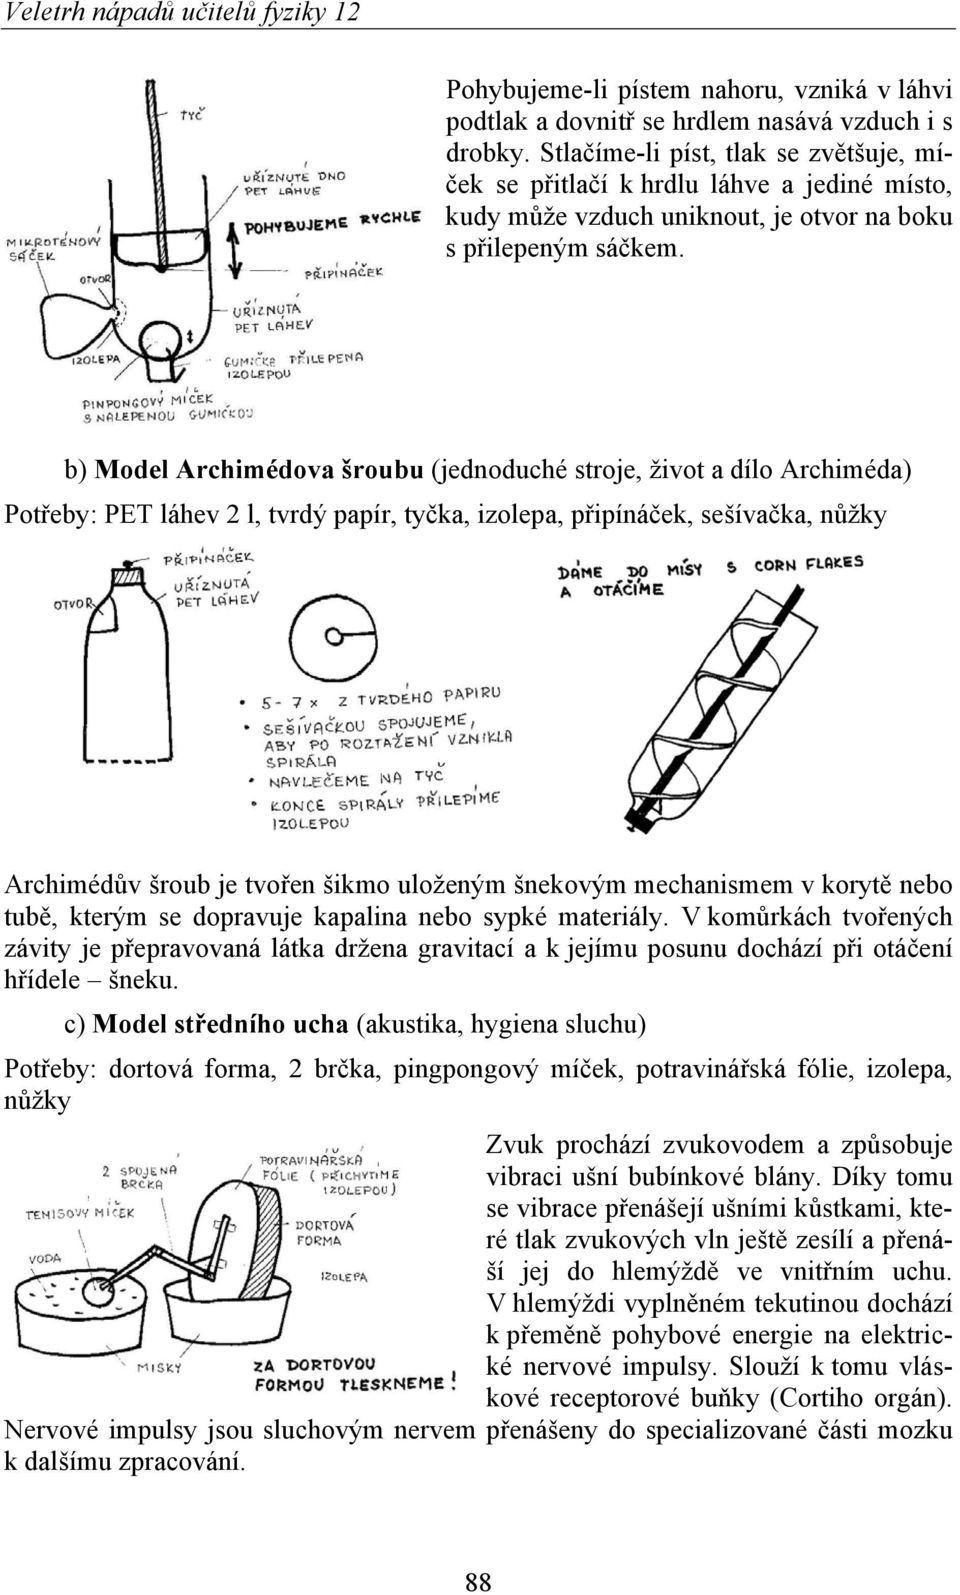 b) Model Archimédova šroubu (jednoduché stroje, život a dílo Archiméda) Potřeby: PET láhev 2 l, tvrdý papír, tyčka, izolepa, připínáček, sešívačka, nůžky Archimédův šroub je tvořen šikmo uloženým